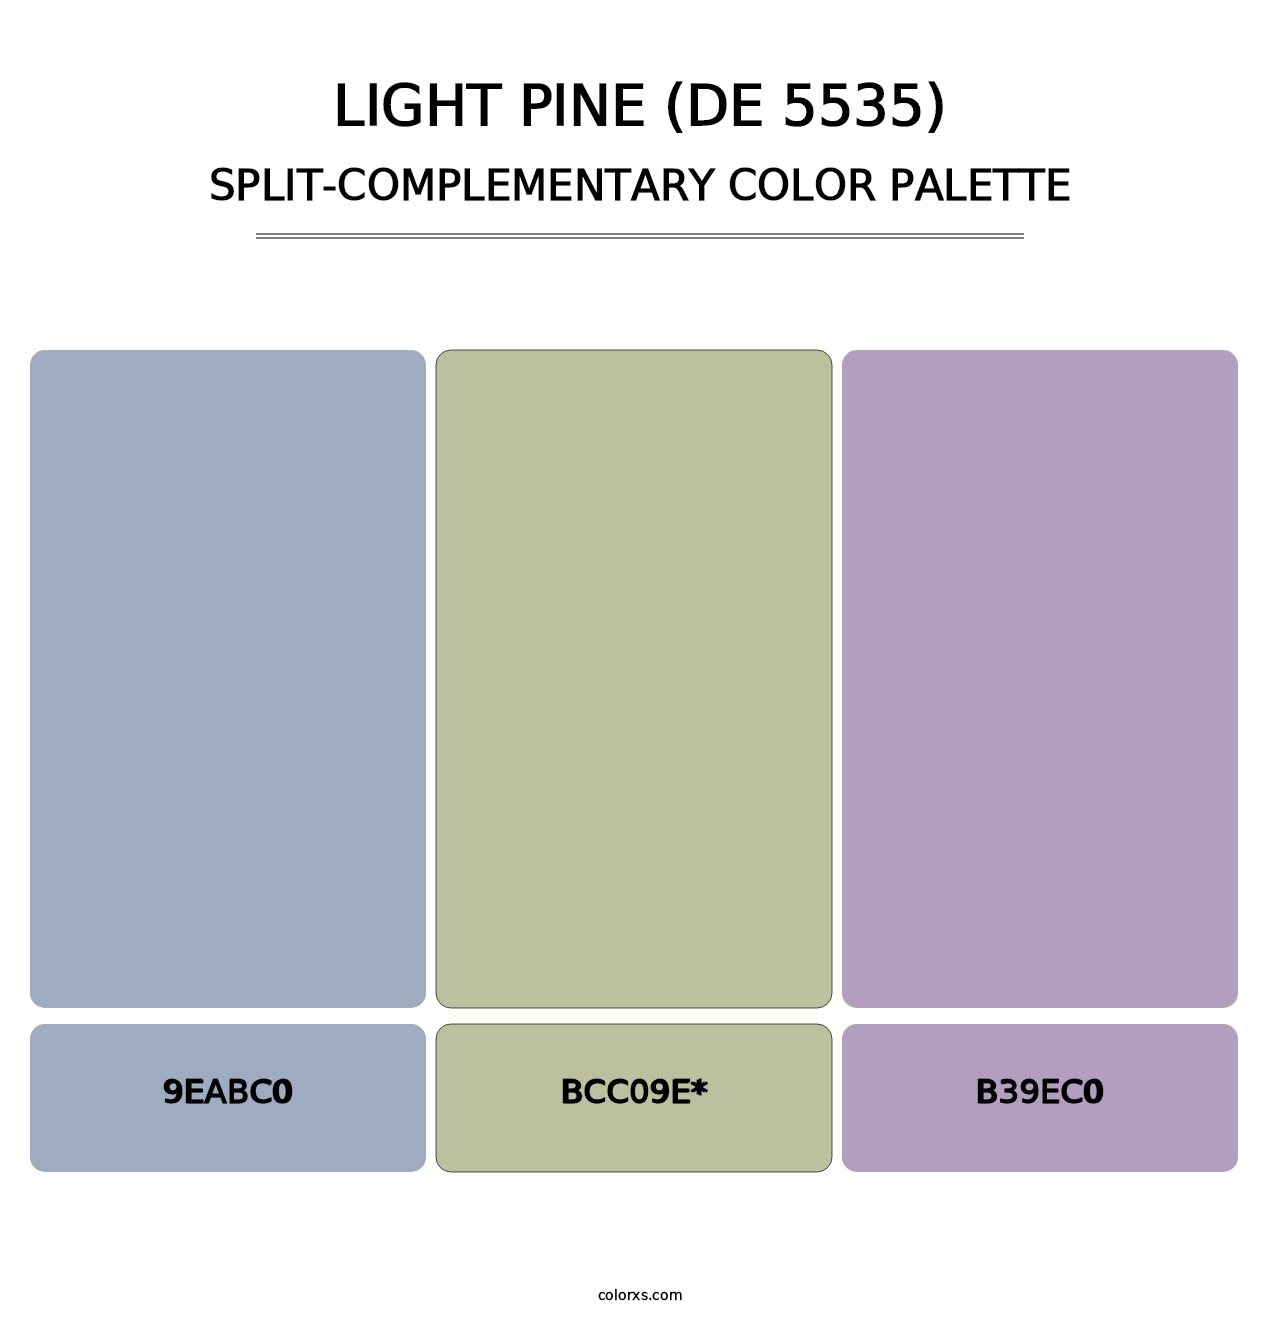 Light Pine (DE 5535) - Split-Complementary Color Palette